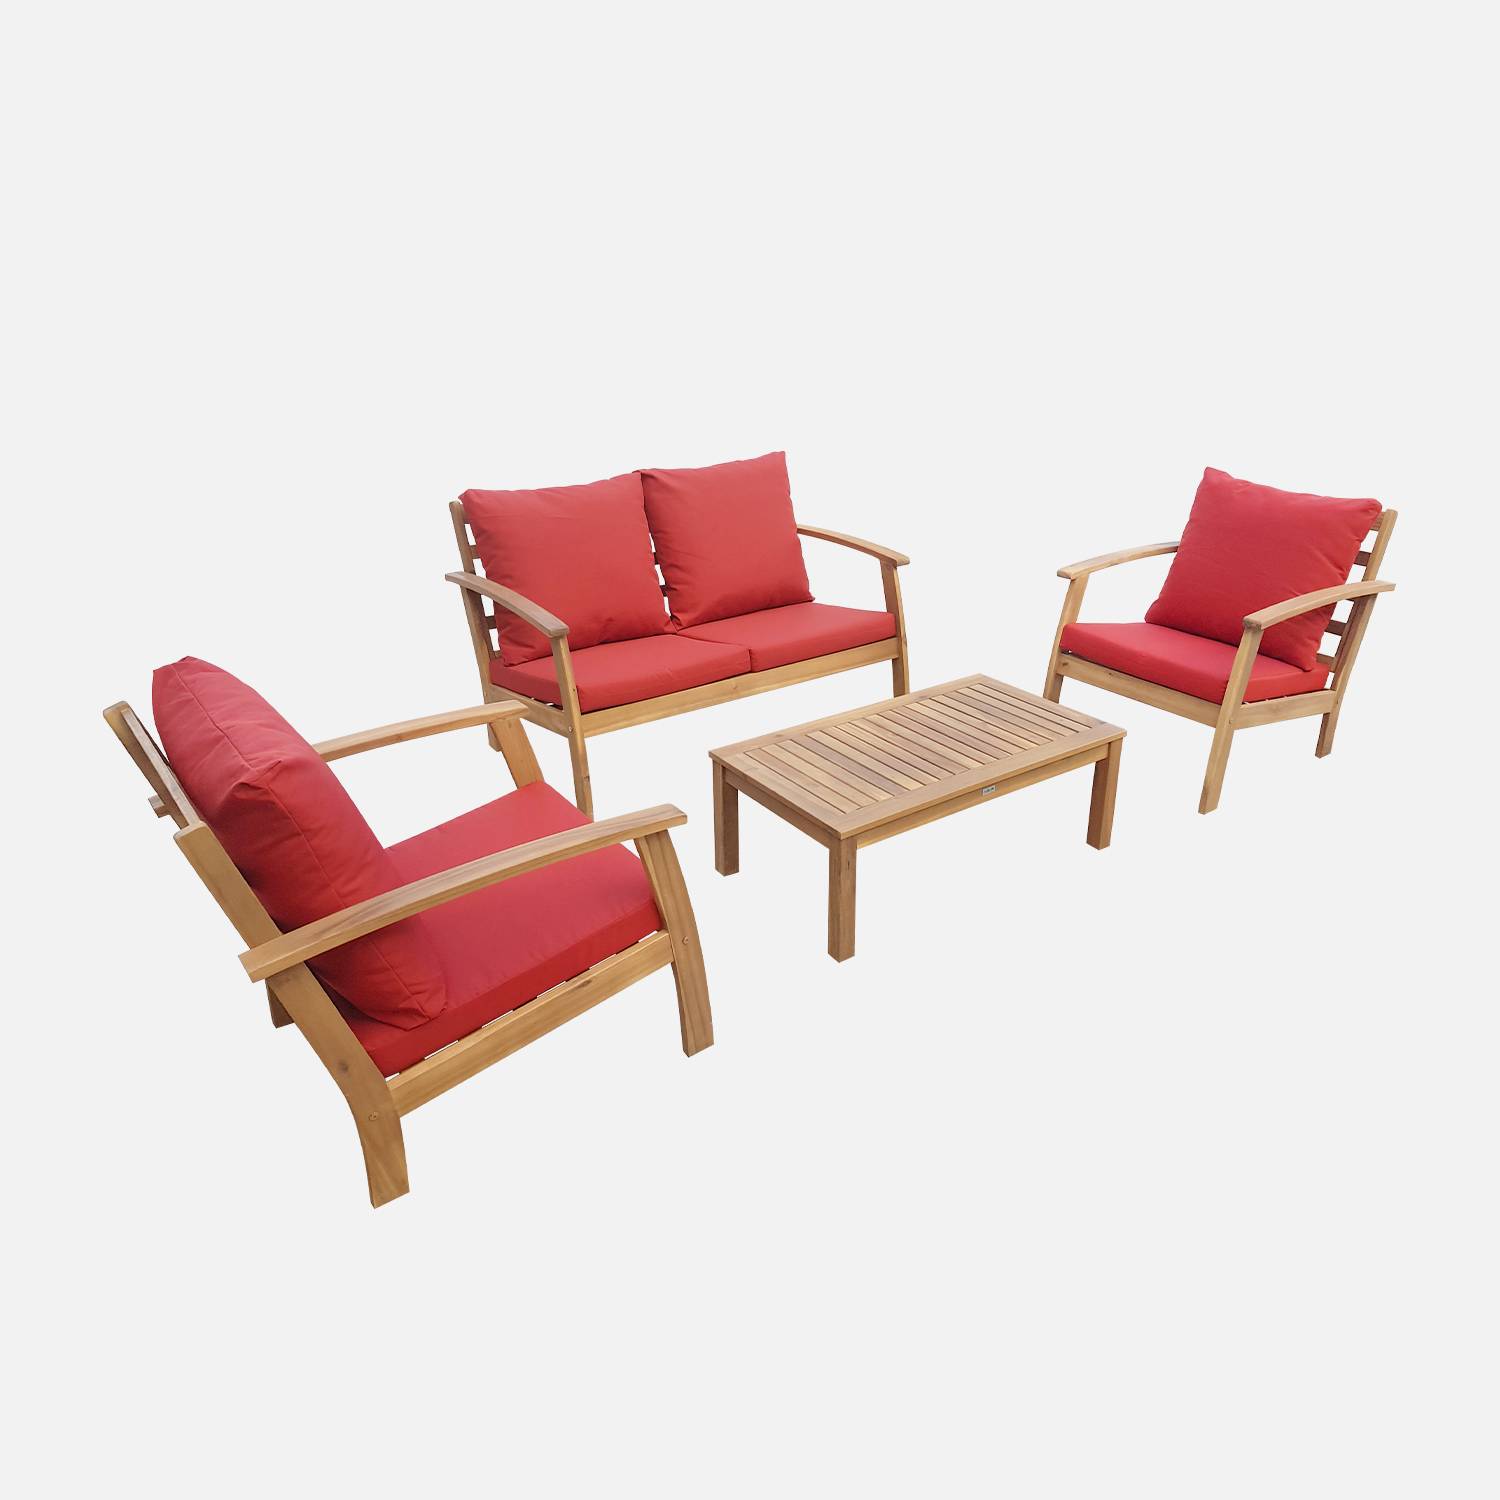 Mobília de 4 lugares em madeira para jardim - Ushuaïa - Almofadas terra cota, sofá, poltronas e mesa de centro em acácia, design  Photo3